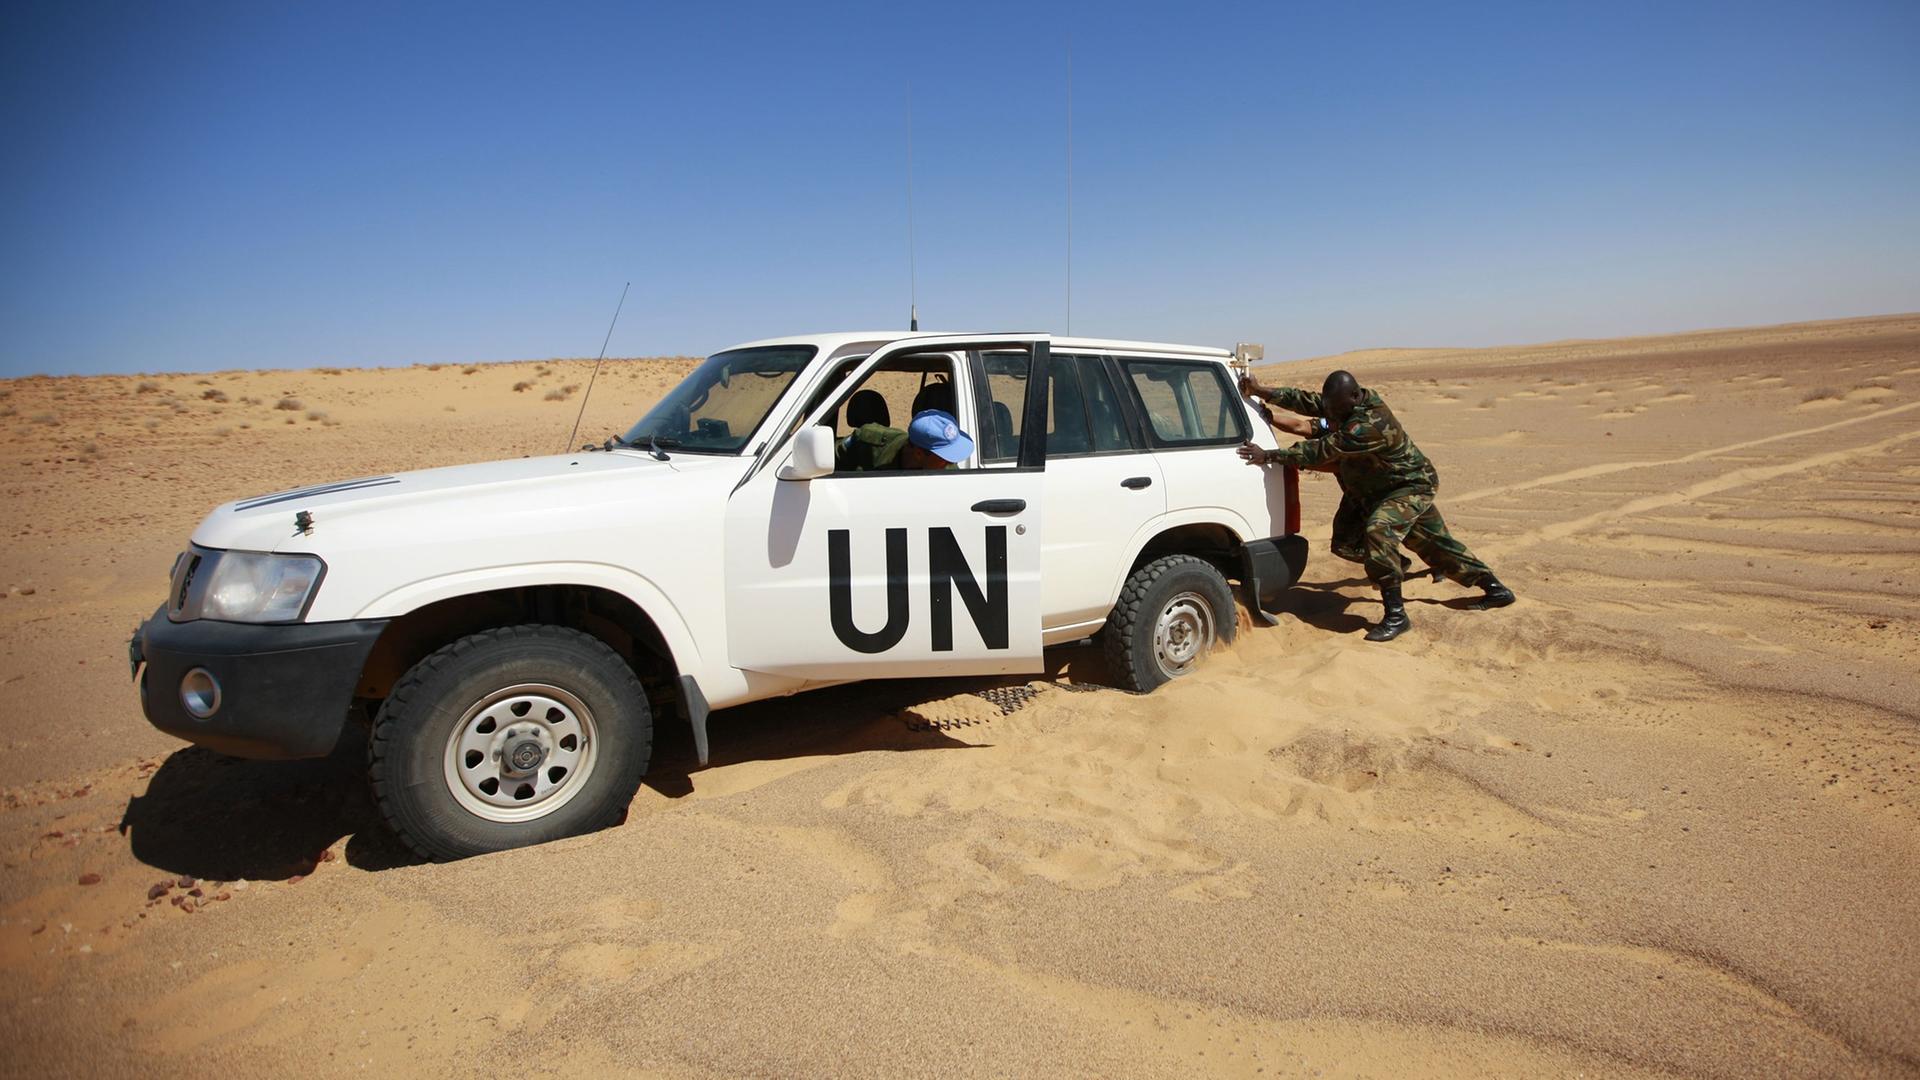 Mitglieder des Military Liaison Office of the UN Mission for the Referendum in Western Sahara (MINURSO), versuchen in Oum Dreyga (Westsahara), ihr Auto aus dem Sand zu bewegen.